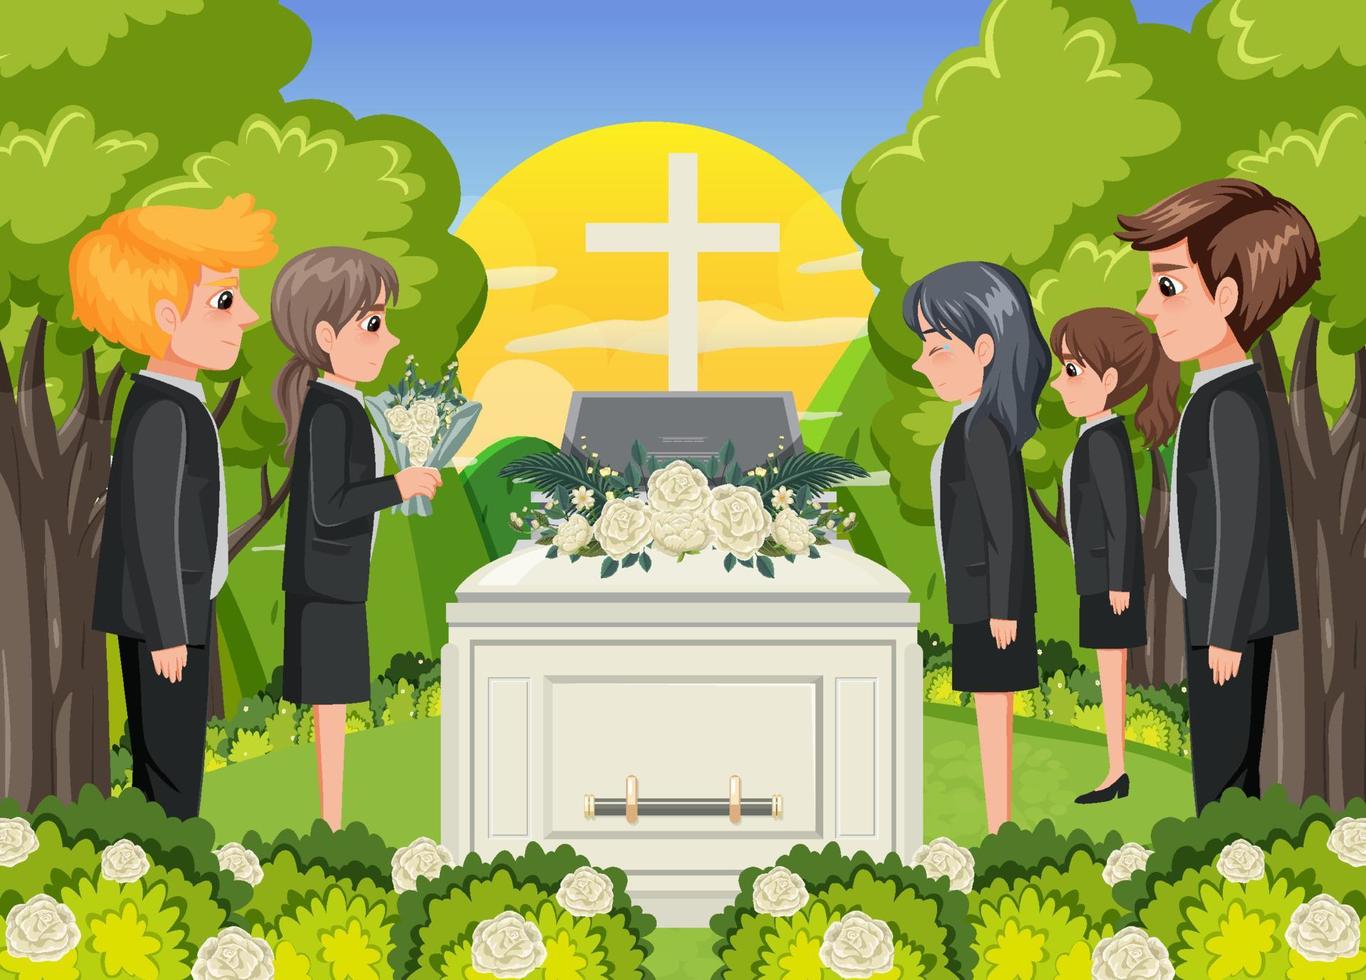 cerimônia fúnebre na religião cristã vetor